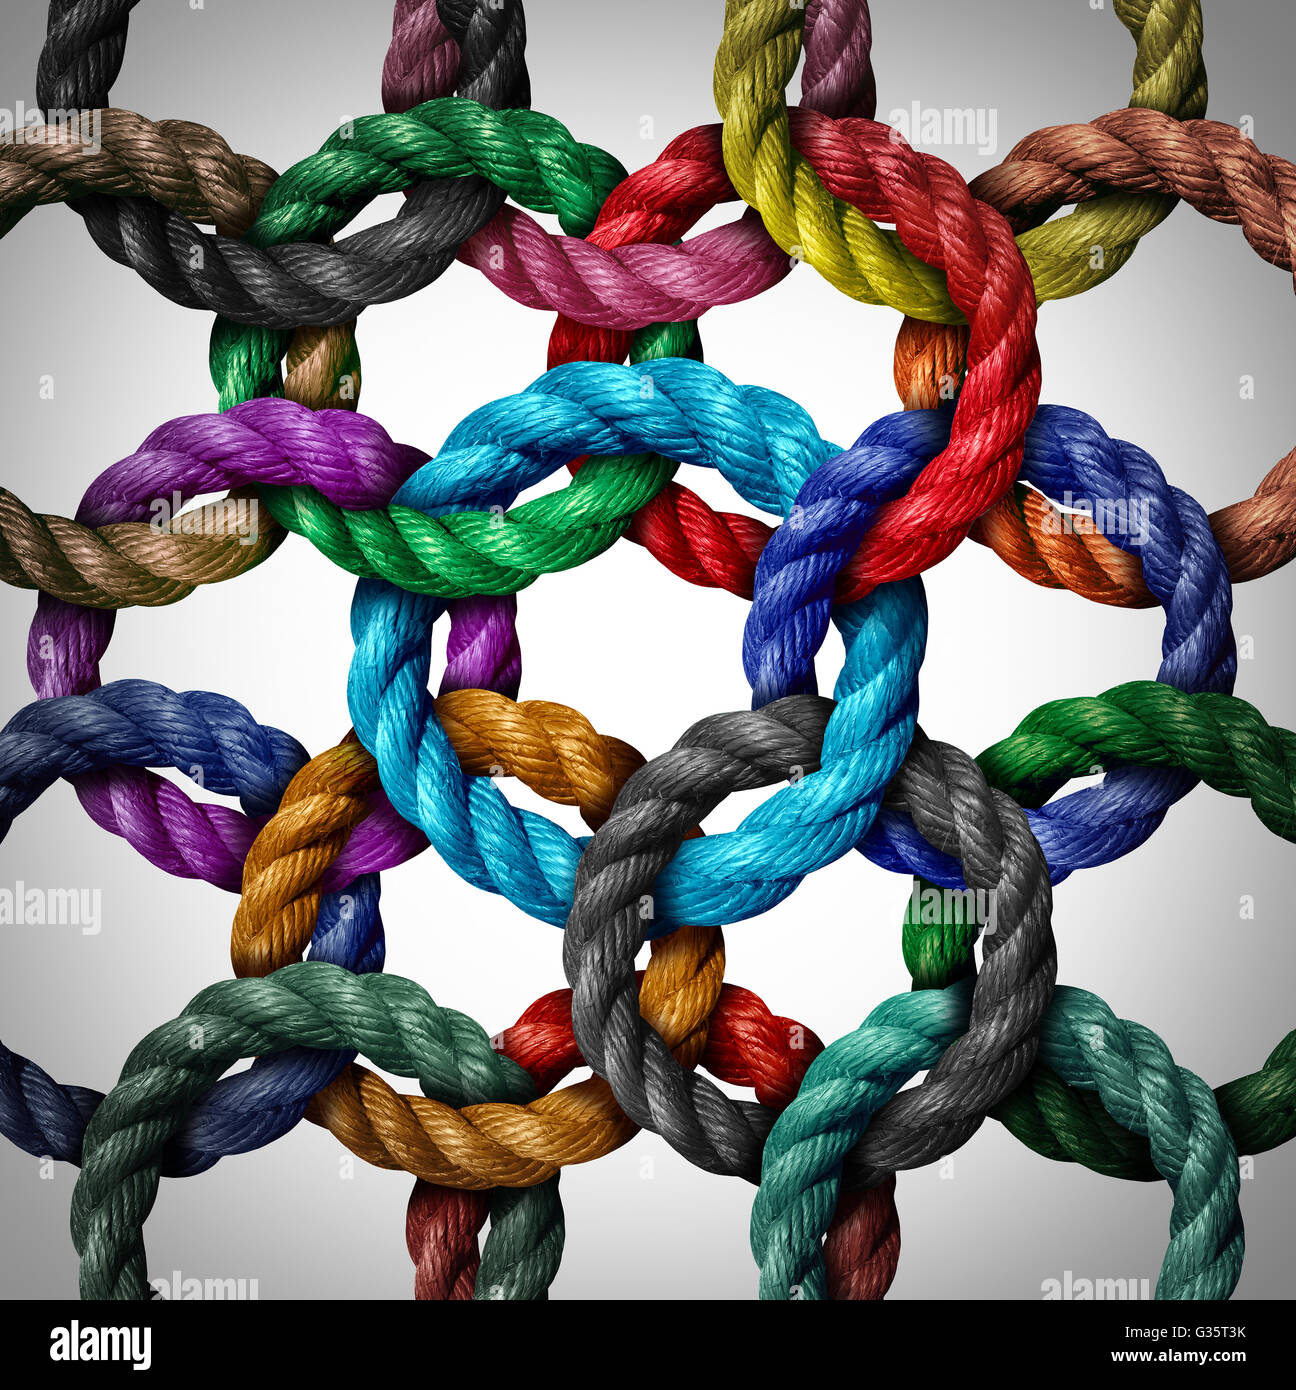 La mise en réseau et la connexion réseau Central concept d'entreprise comme un groupe de cordes cercle divers connecté à une boucle de corde centrale comme une métaphore pour la connectivité et la liaison à un système de structure de support. Banque D'Images